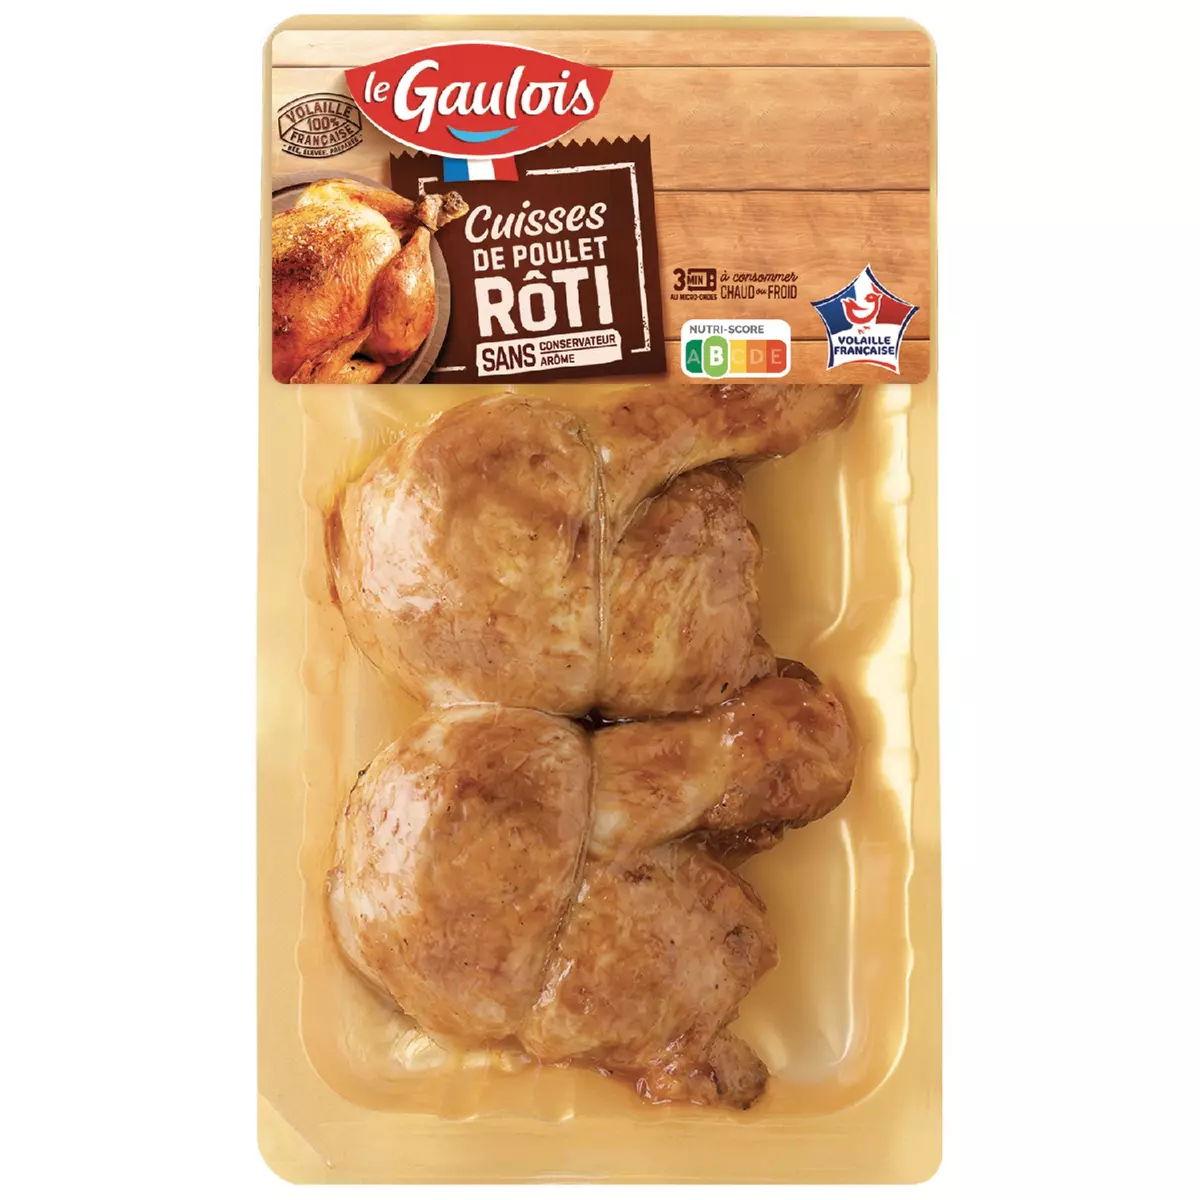 LE GAULOIS Cuisses de poulet rôti 2 pièces 360g